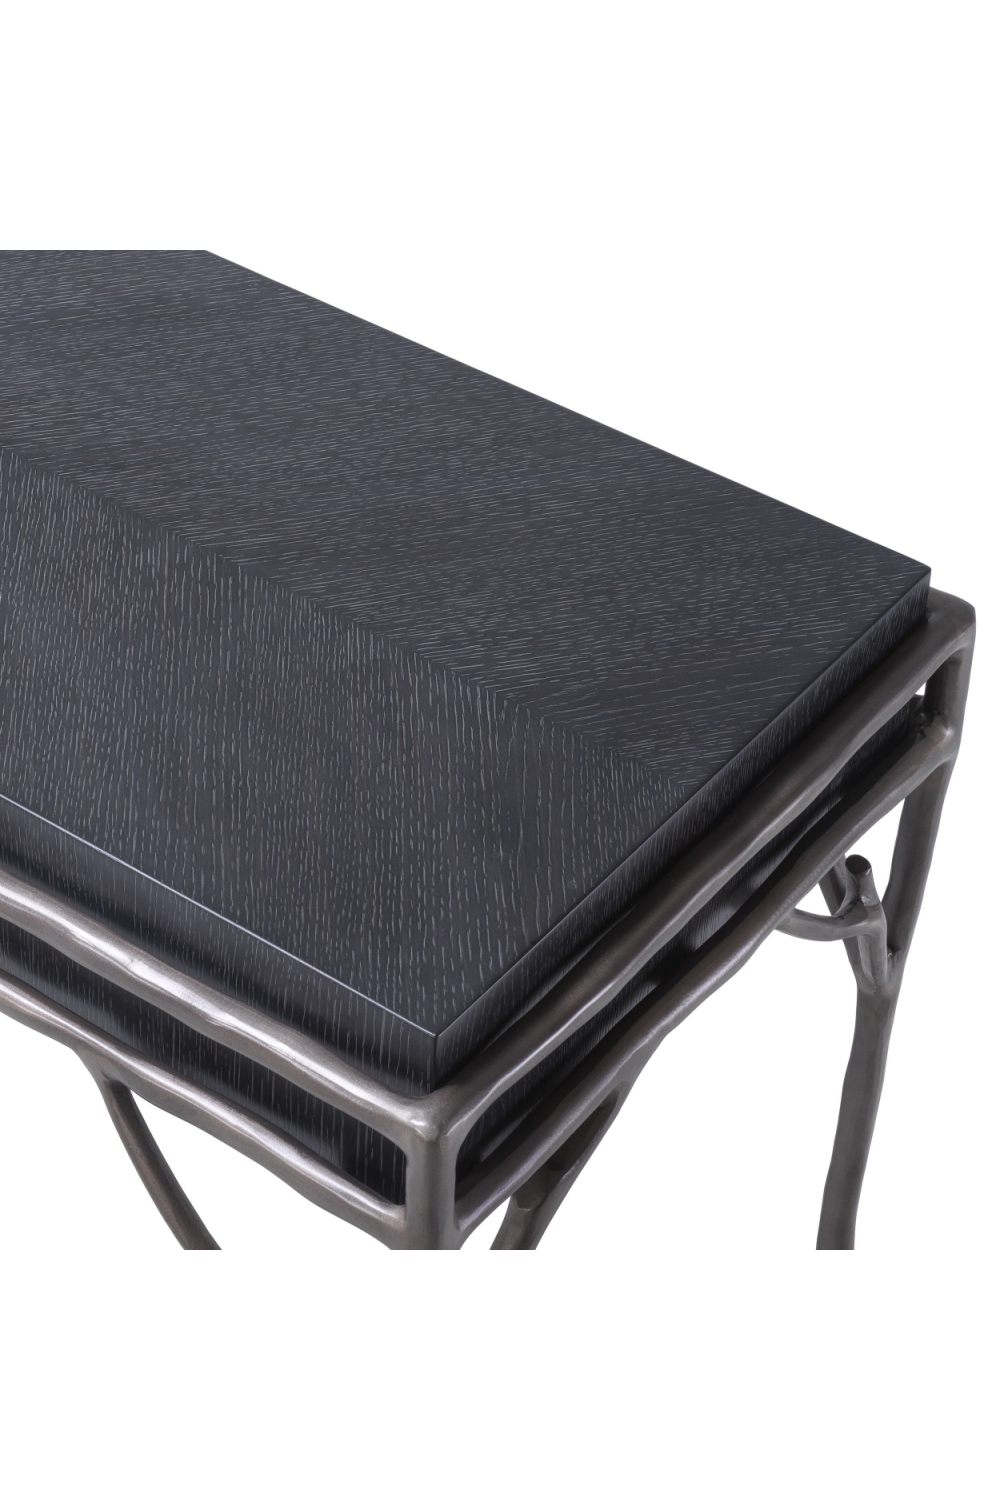 Charcoal Gray Oak Console Table | Eichholtz Premier | OROA